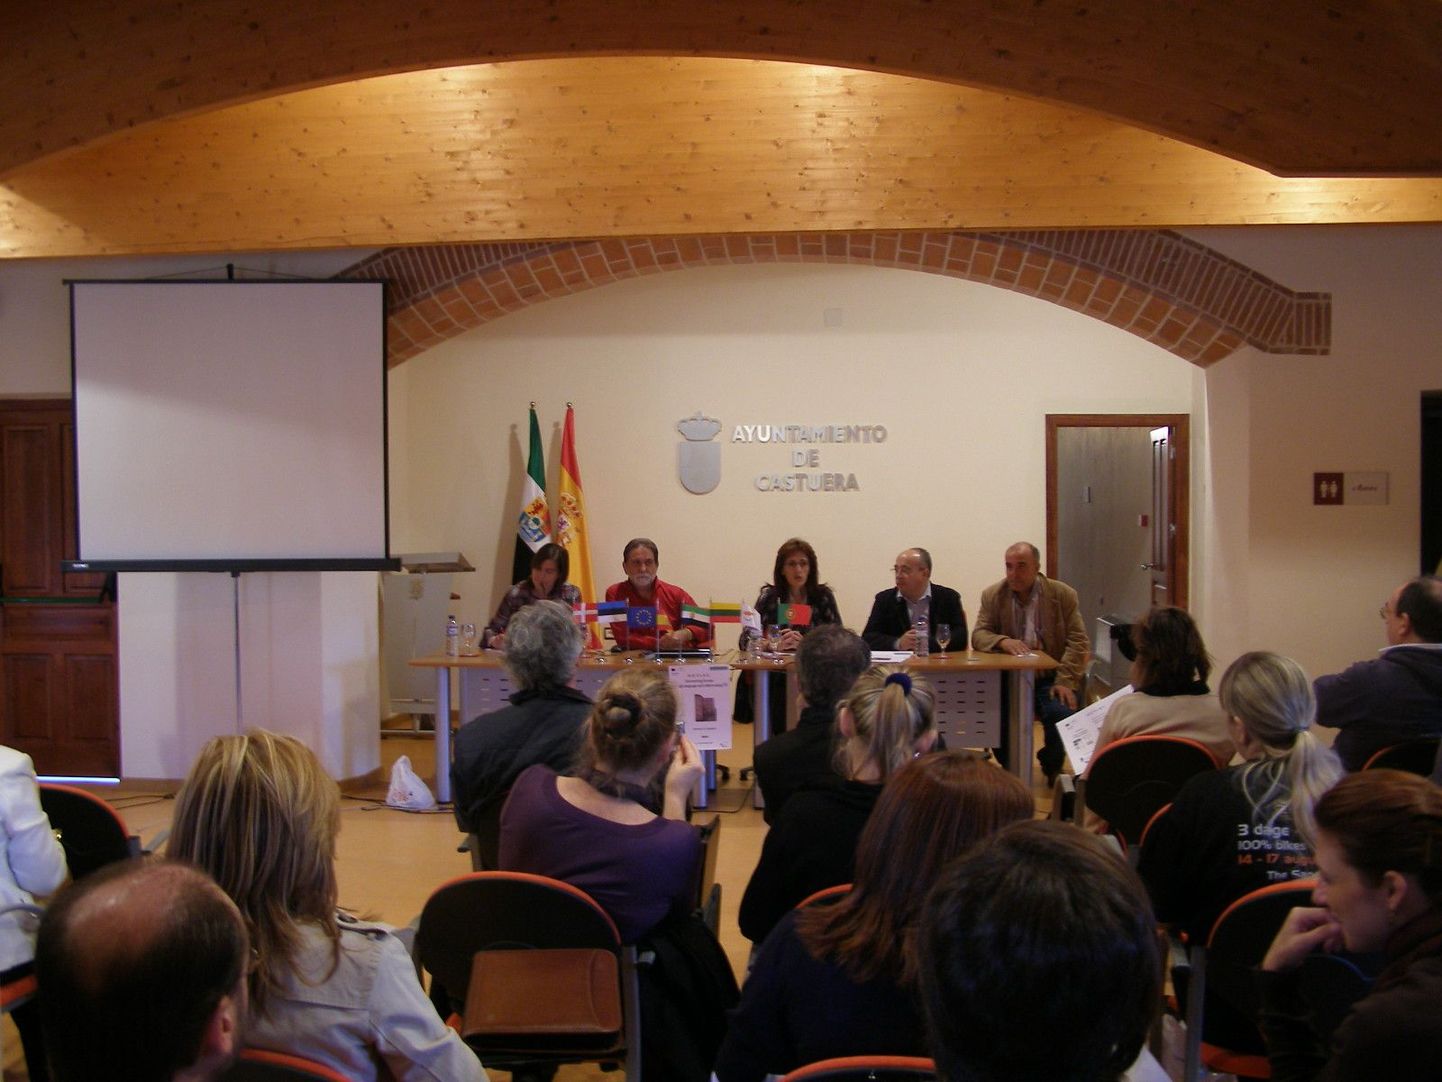 Pärnu täiskasvanute gümnaasiumi rahvas käis Hispaanias keele- ja kultuuriõppe programmi avaseminaril.